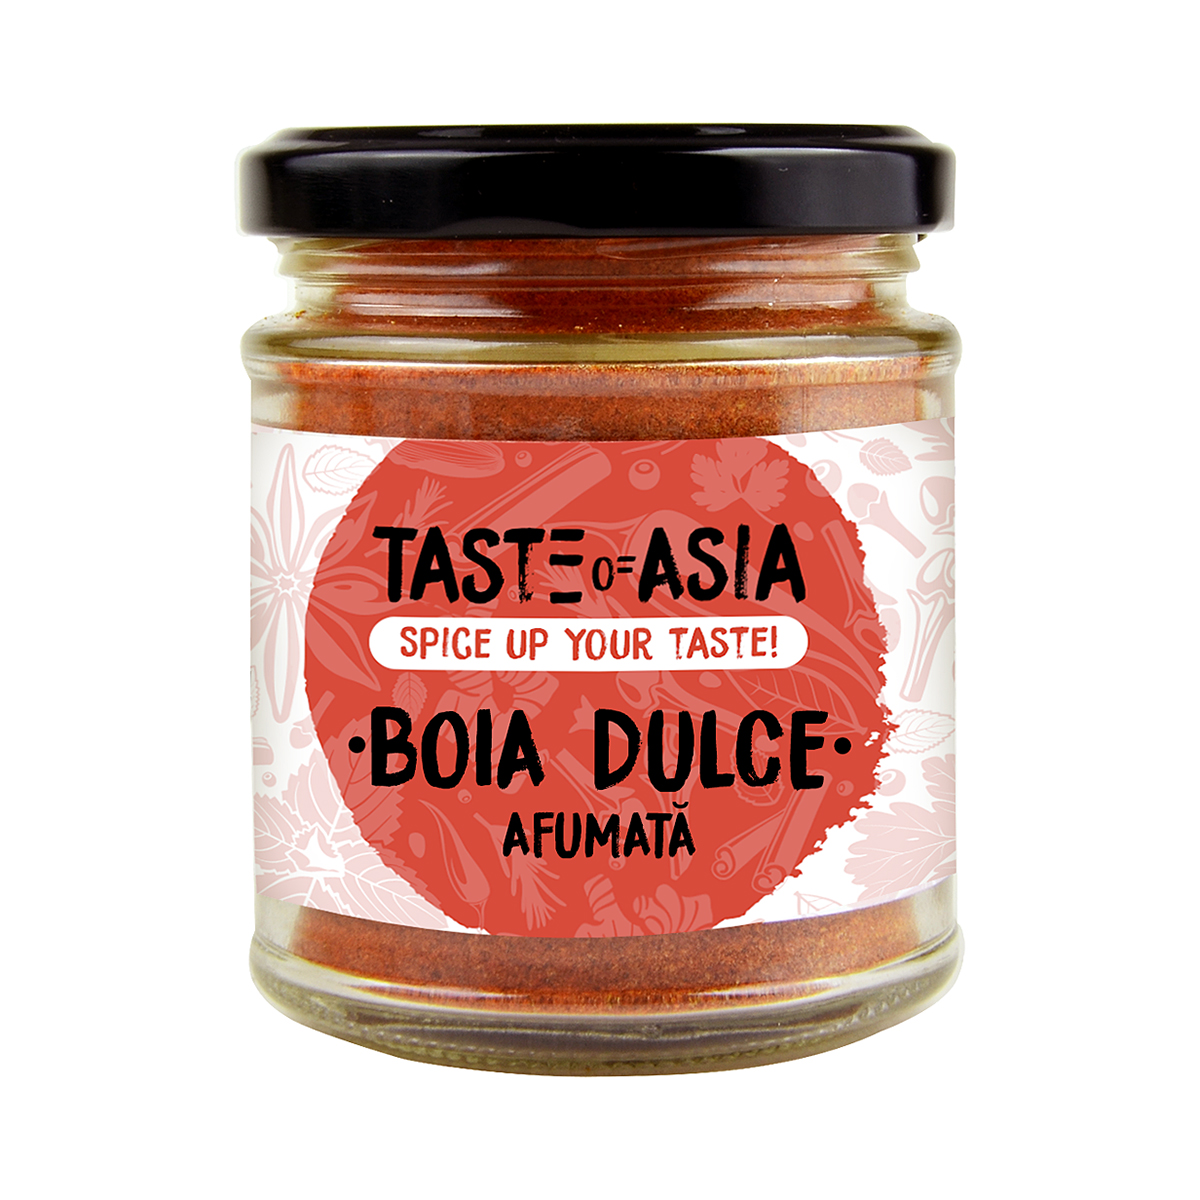 Private Label Taste of Asia - Boia dulce afumata TOA 80g, asianfood.ro